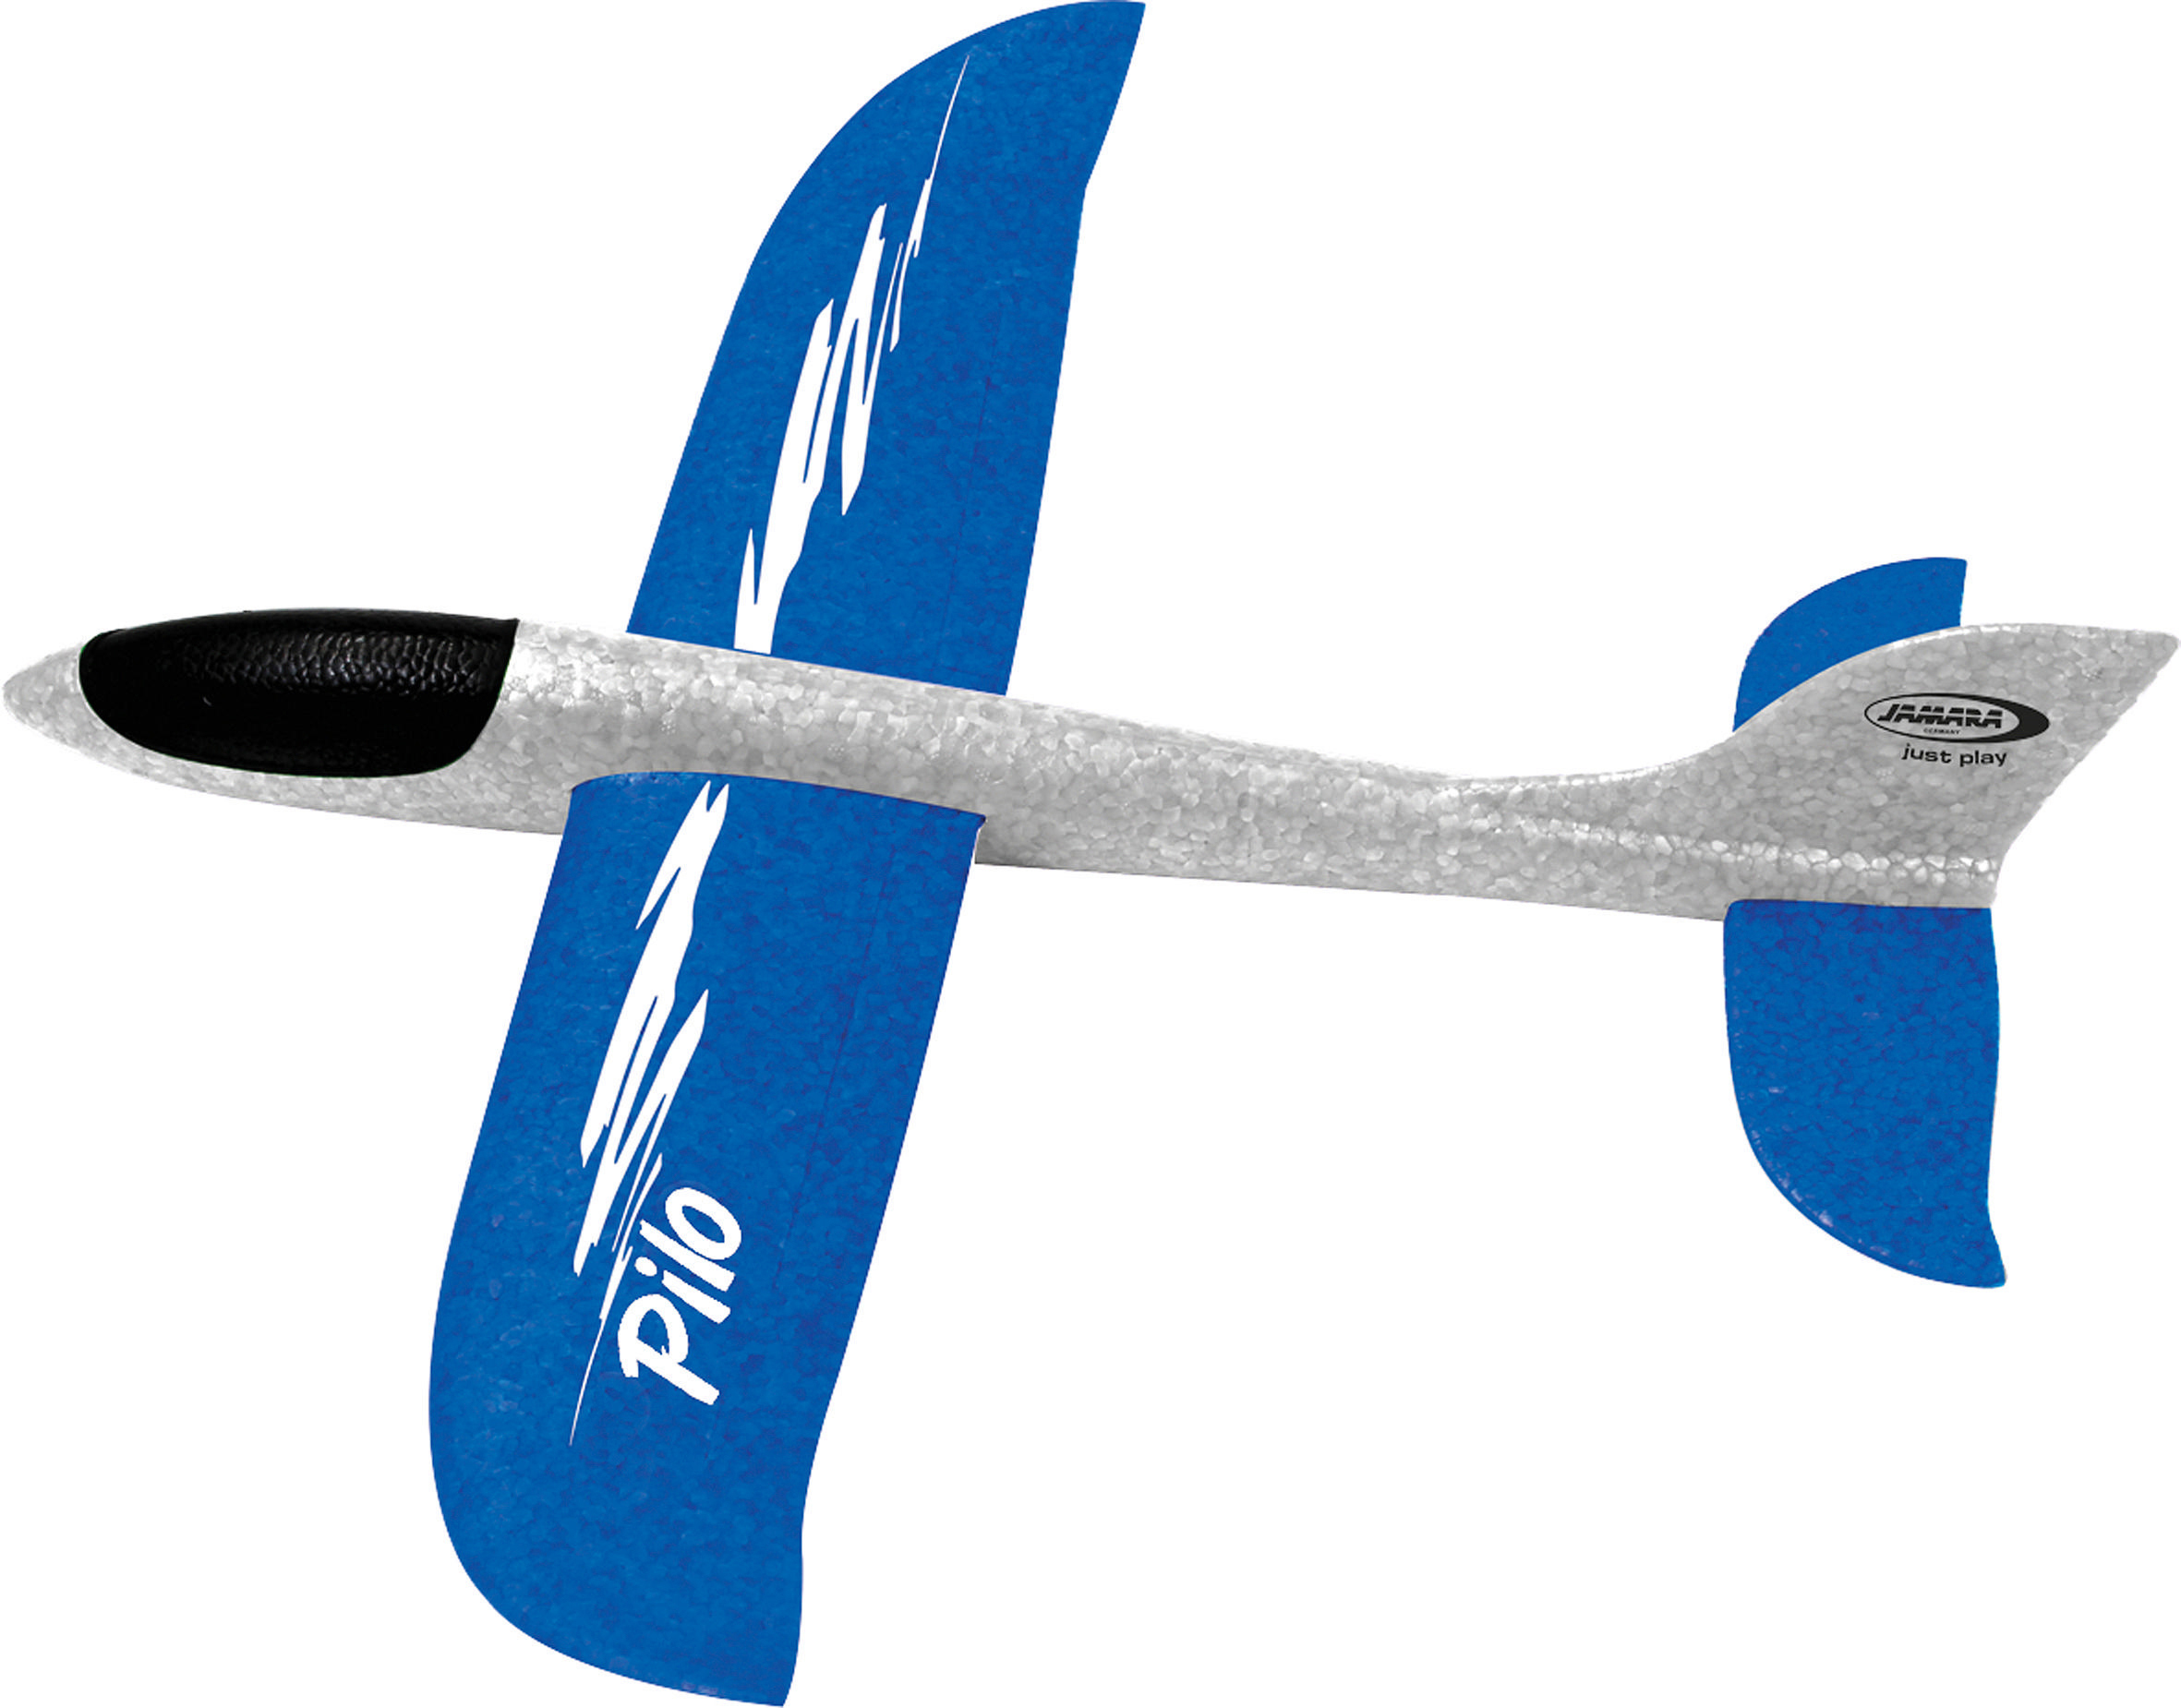 Pilo Schaumwurfgleiter Weiß/Blau KIDS JAMARA Spielzeugflugzeug